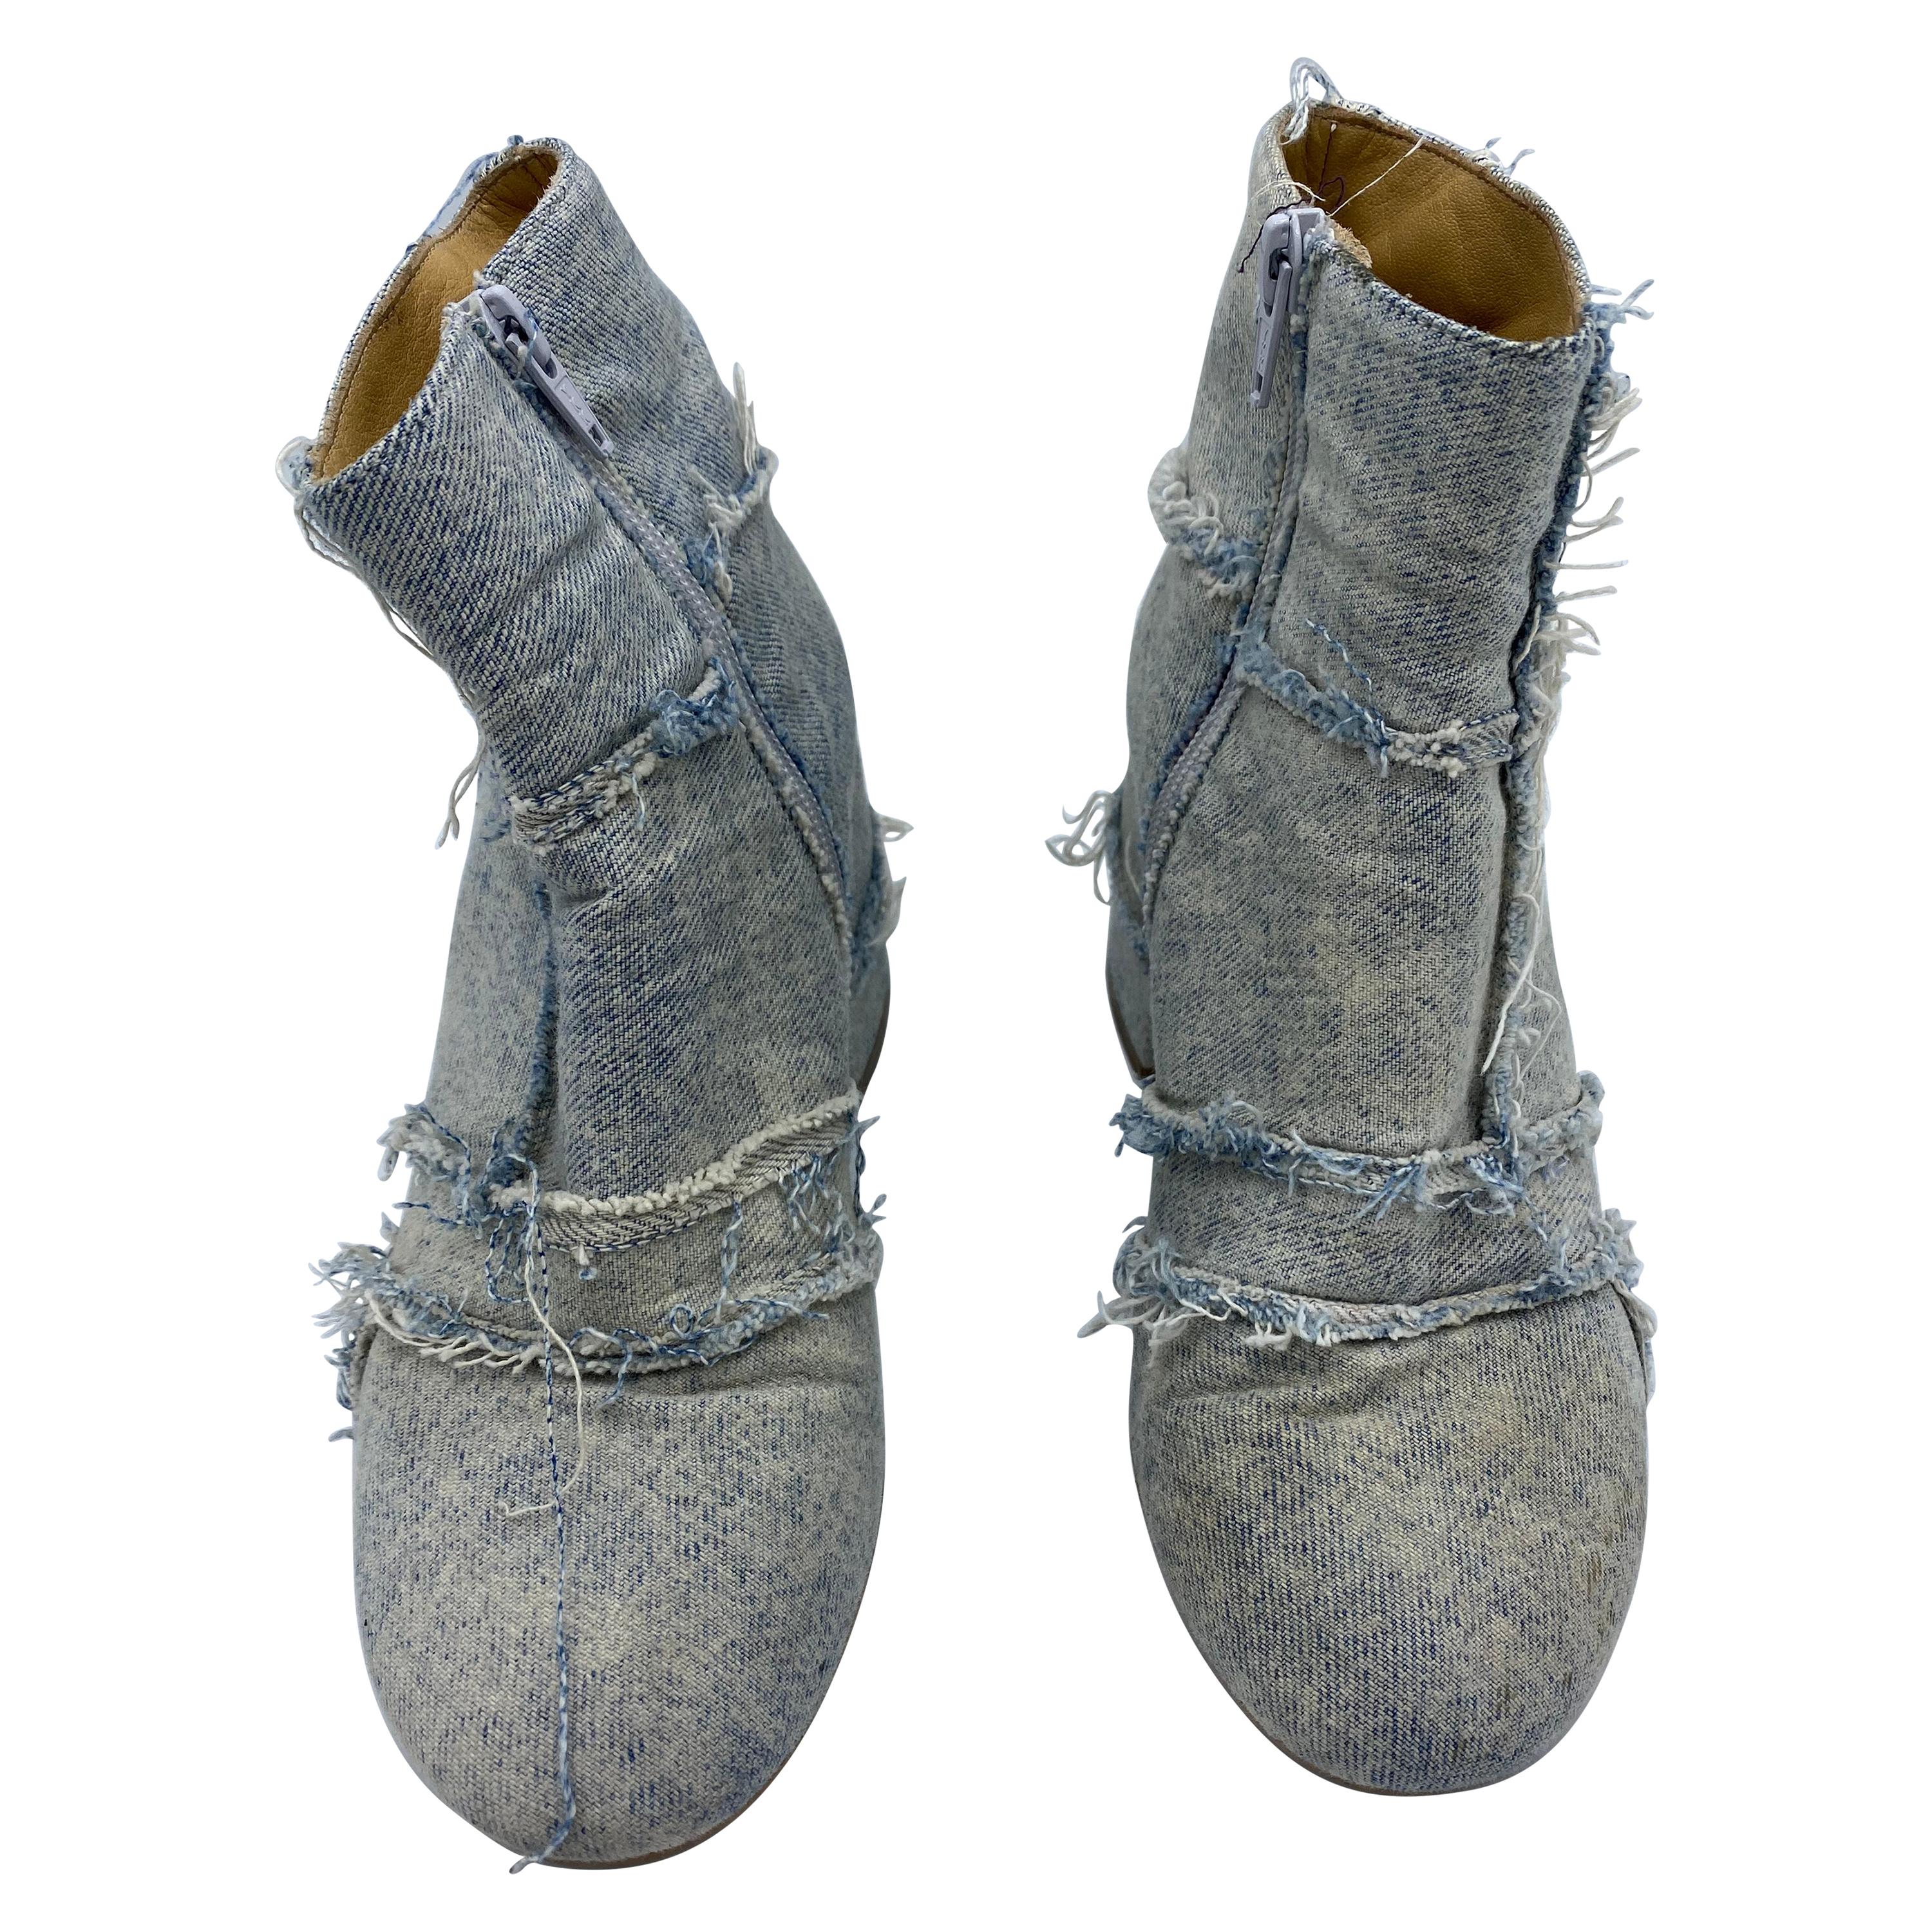 MM6 Maison Margiela Denim Ankle Boots, Size 38